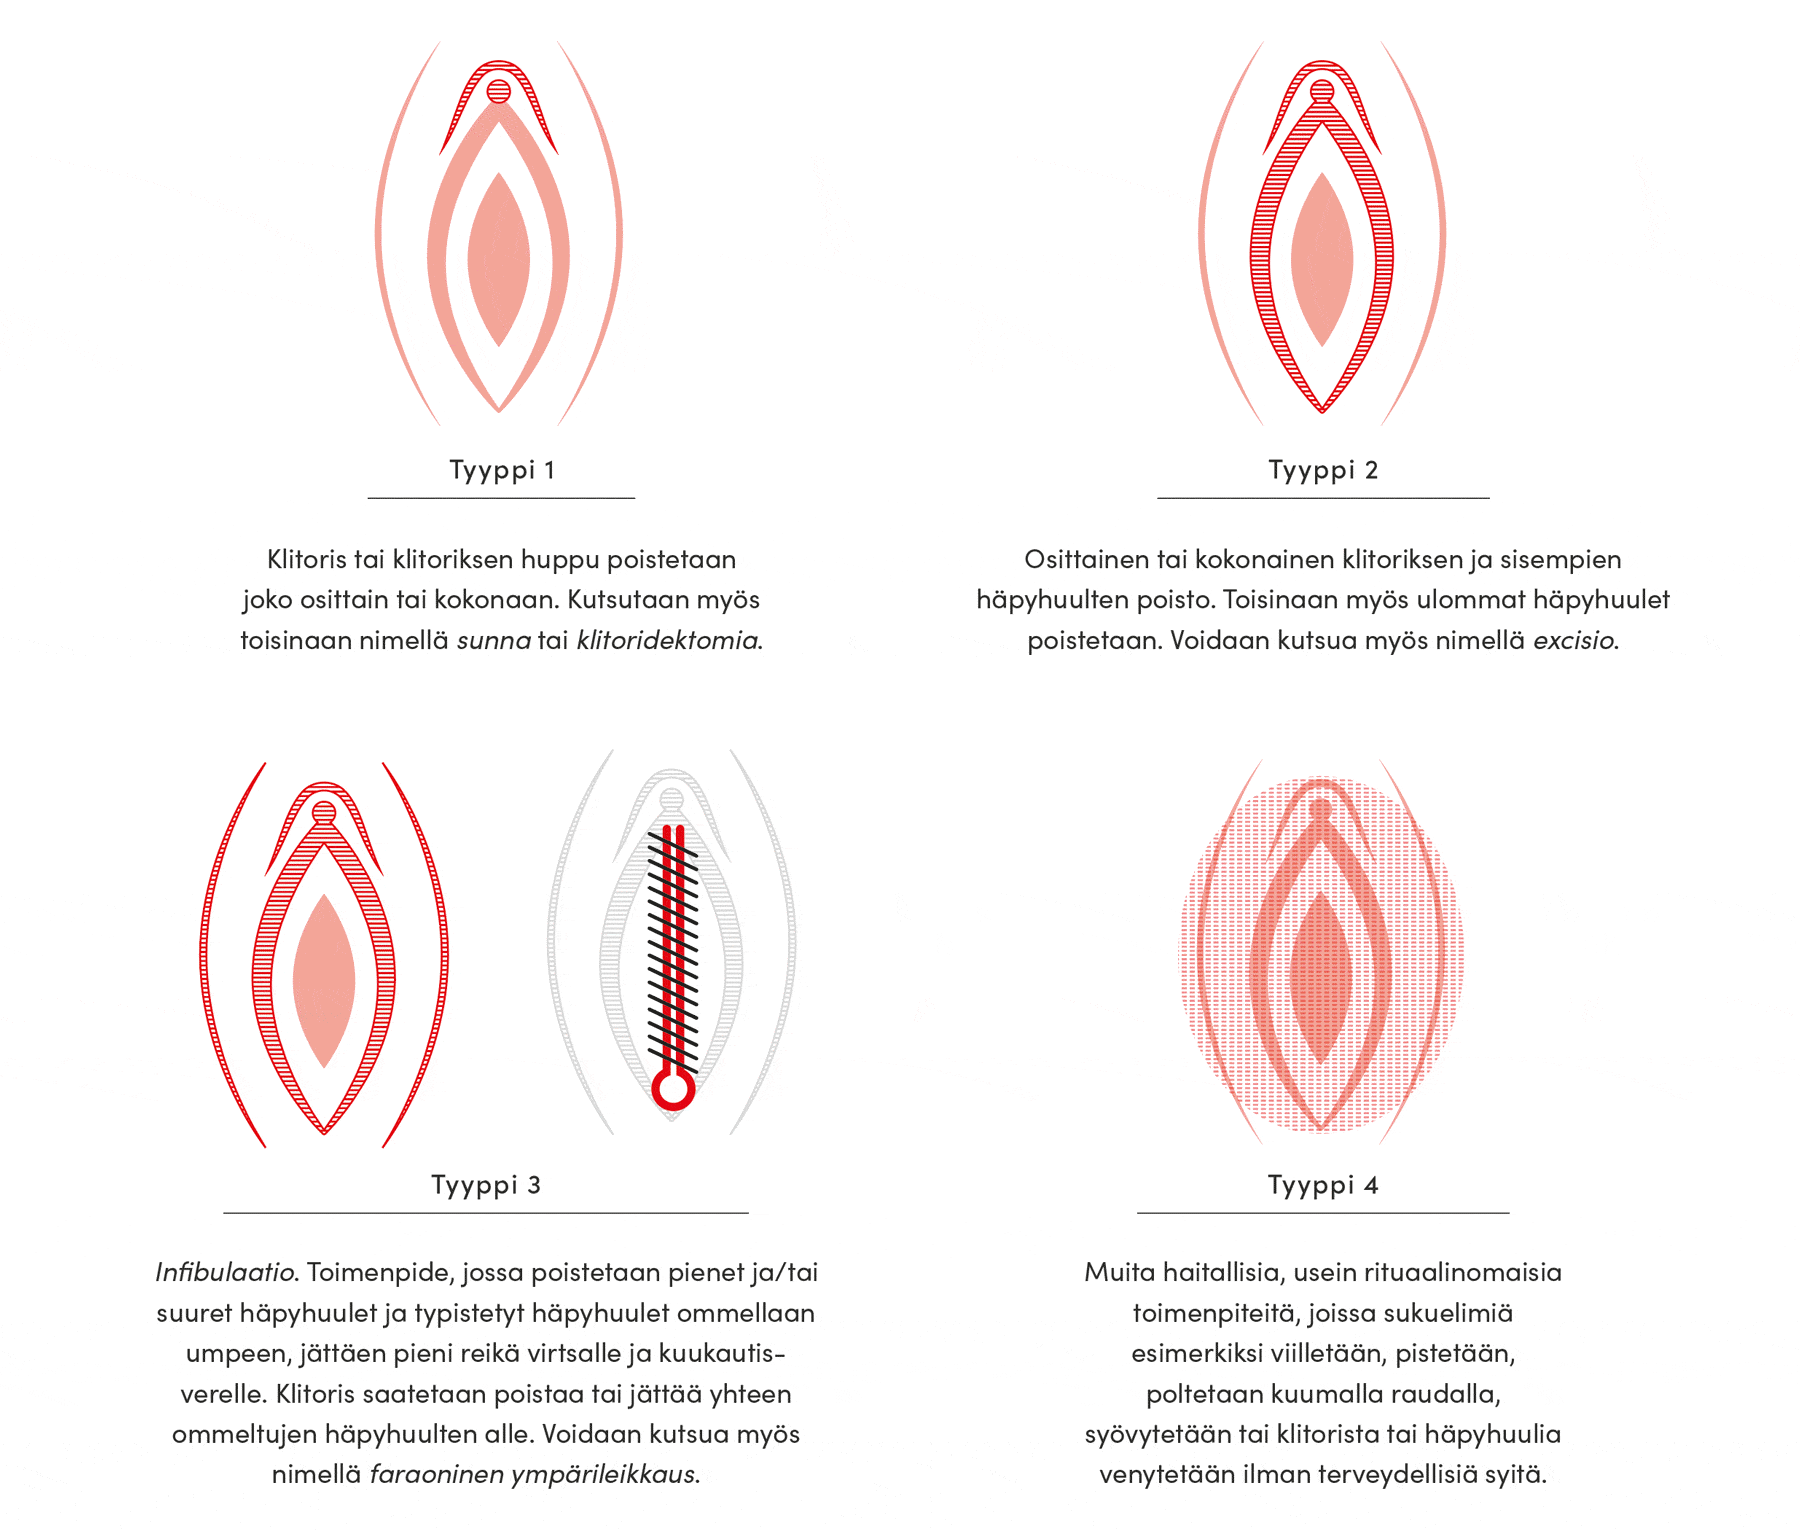 Neljä silpomistyyppiä esitelty visuaalisesti kuvituskuvien muodossa